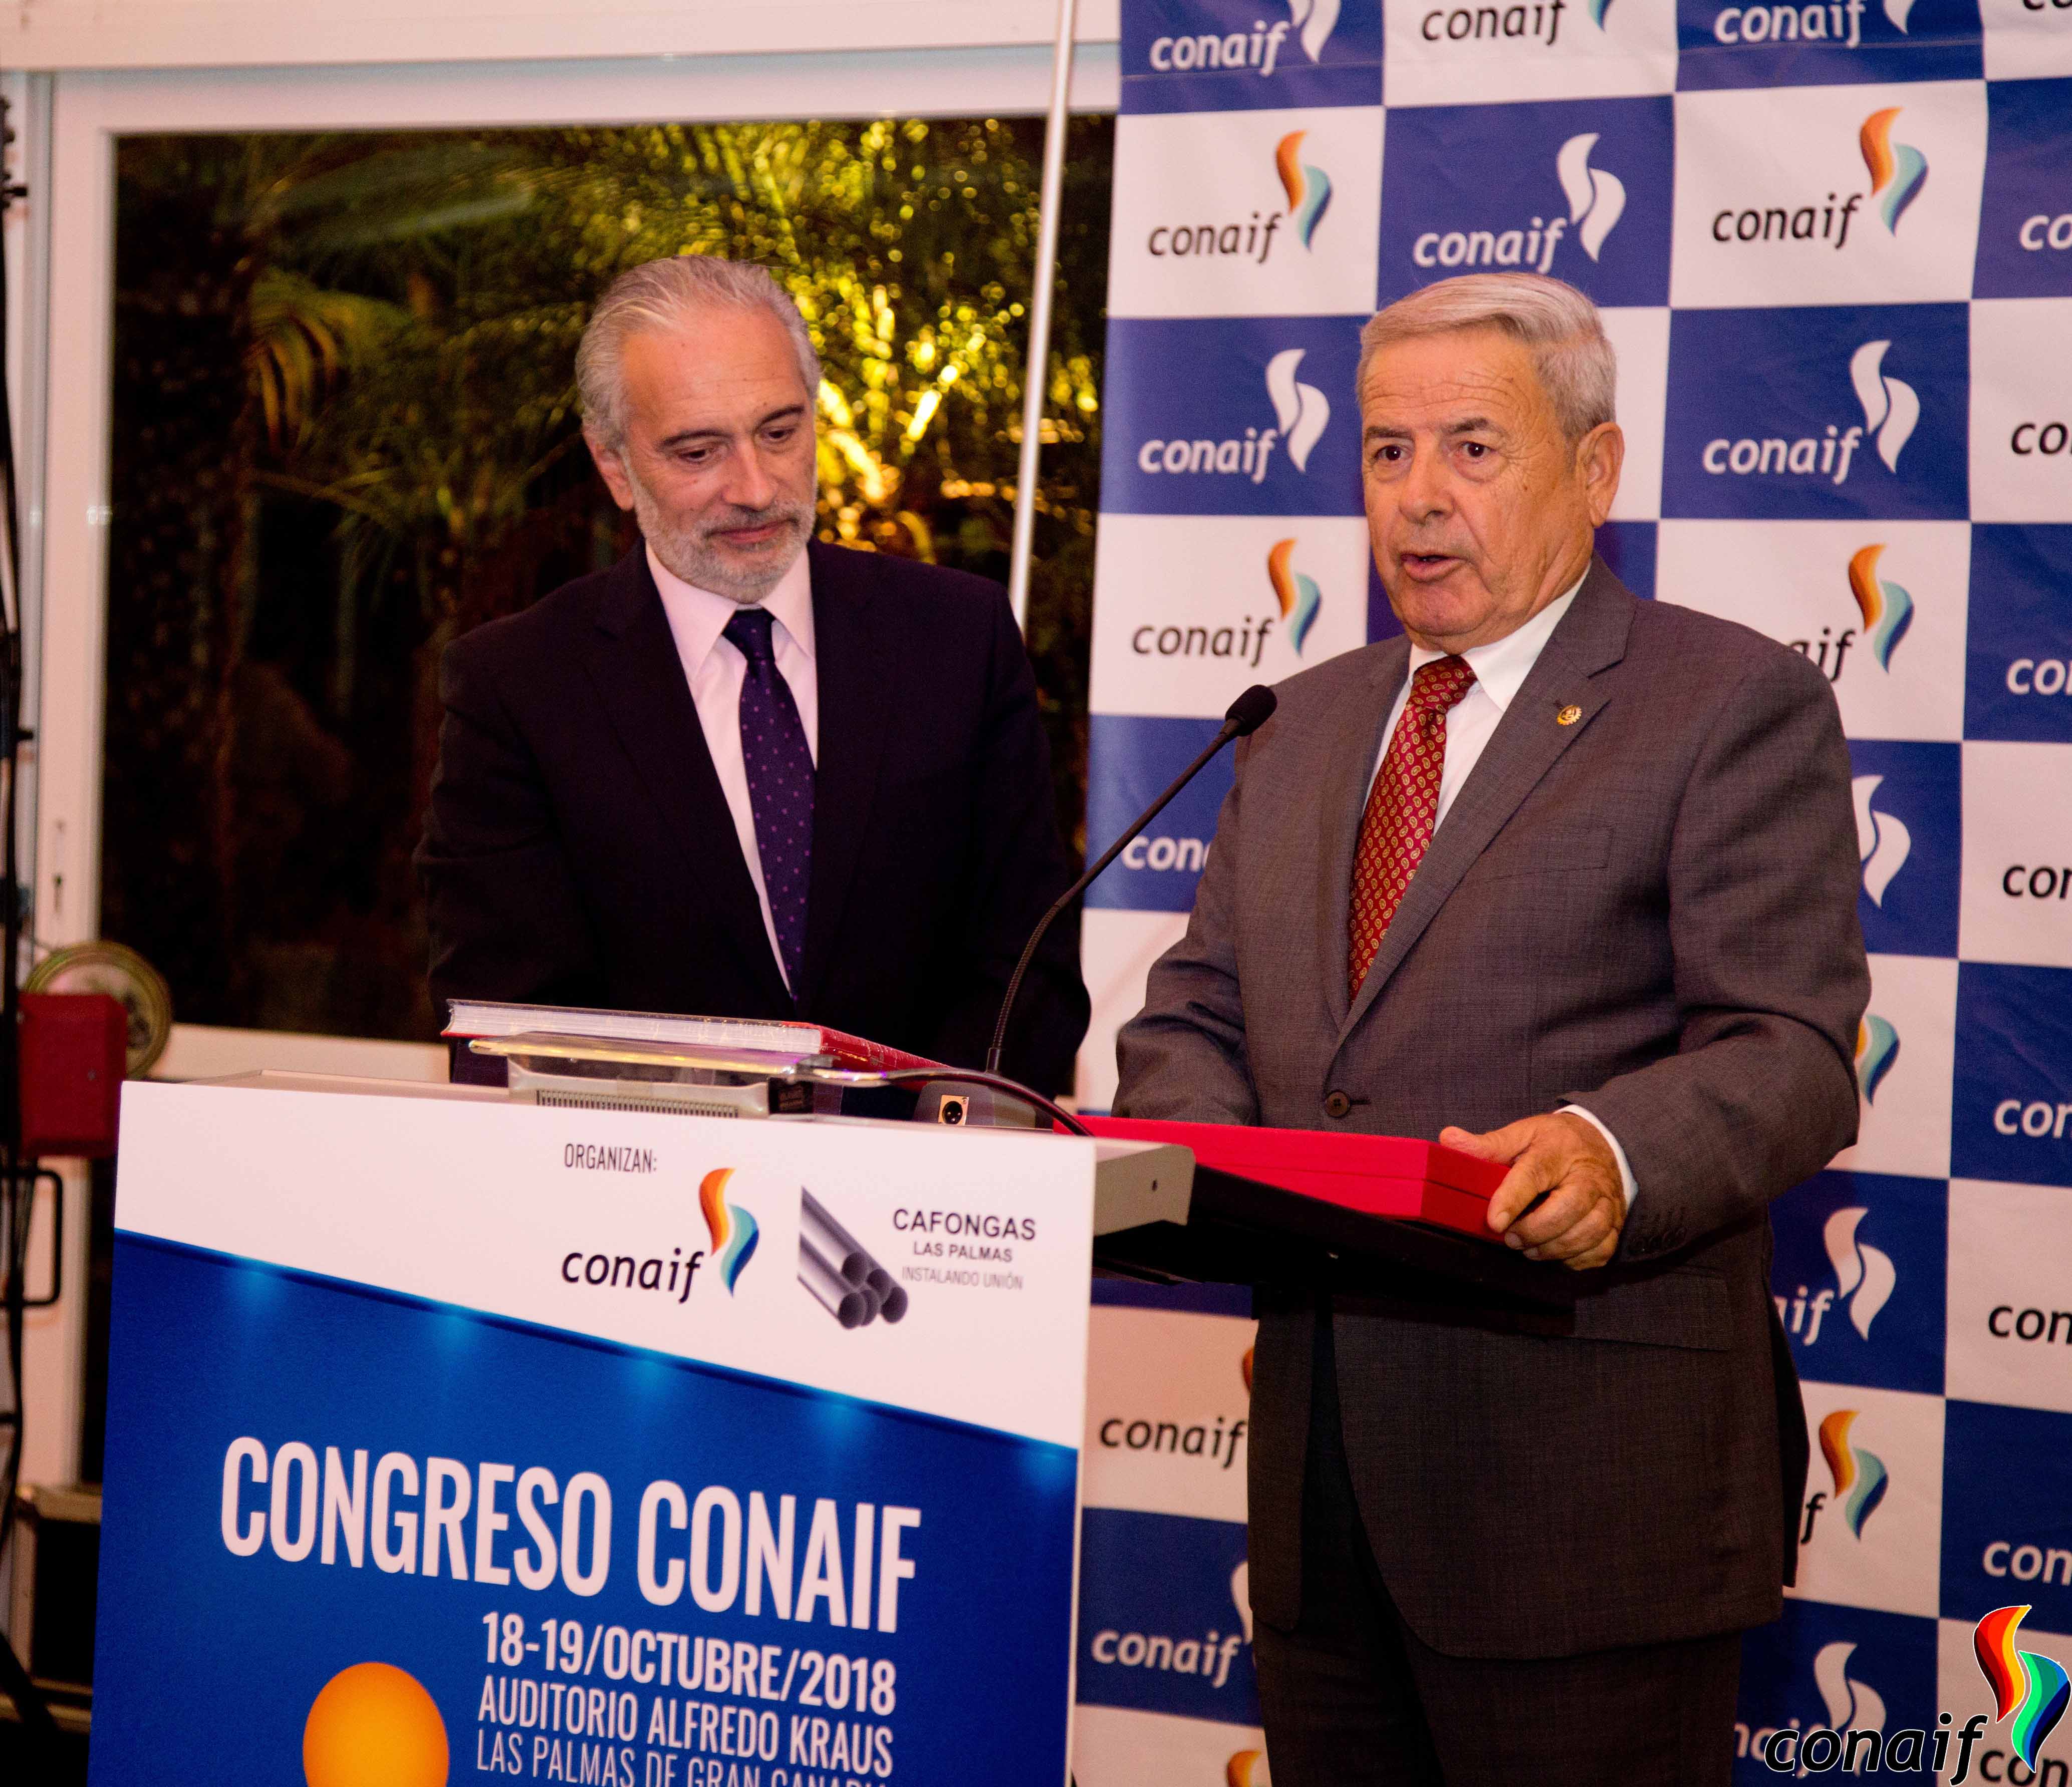 XXIX Congreso Conaif - Las Palmas 2018